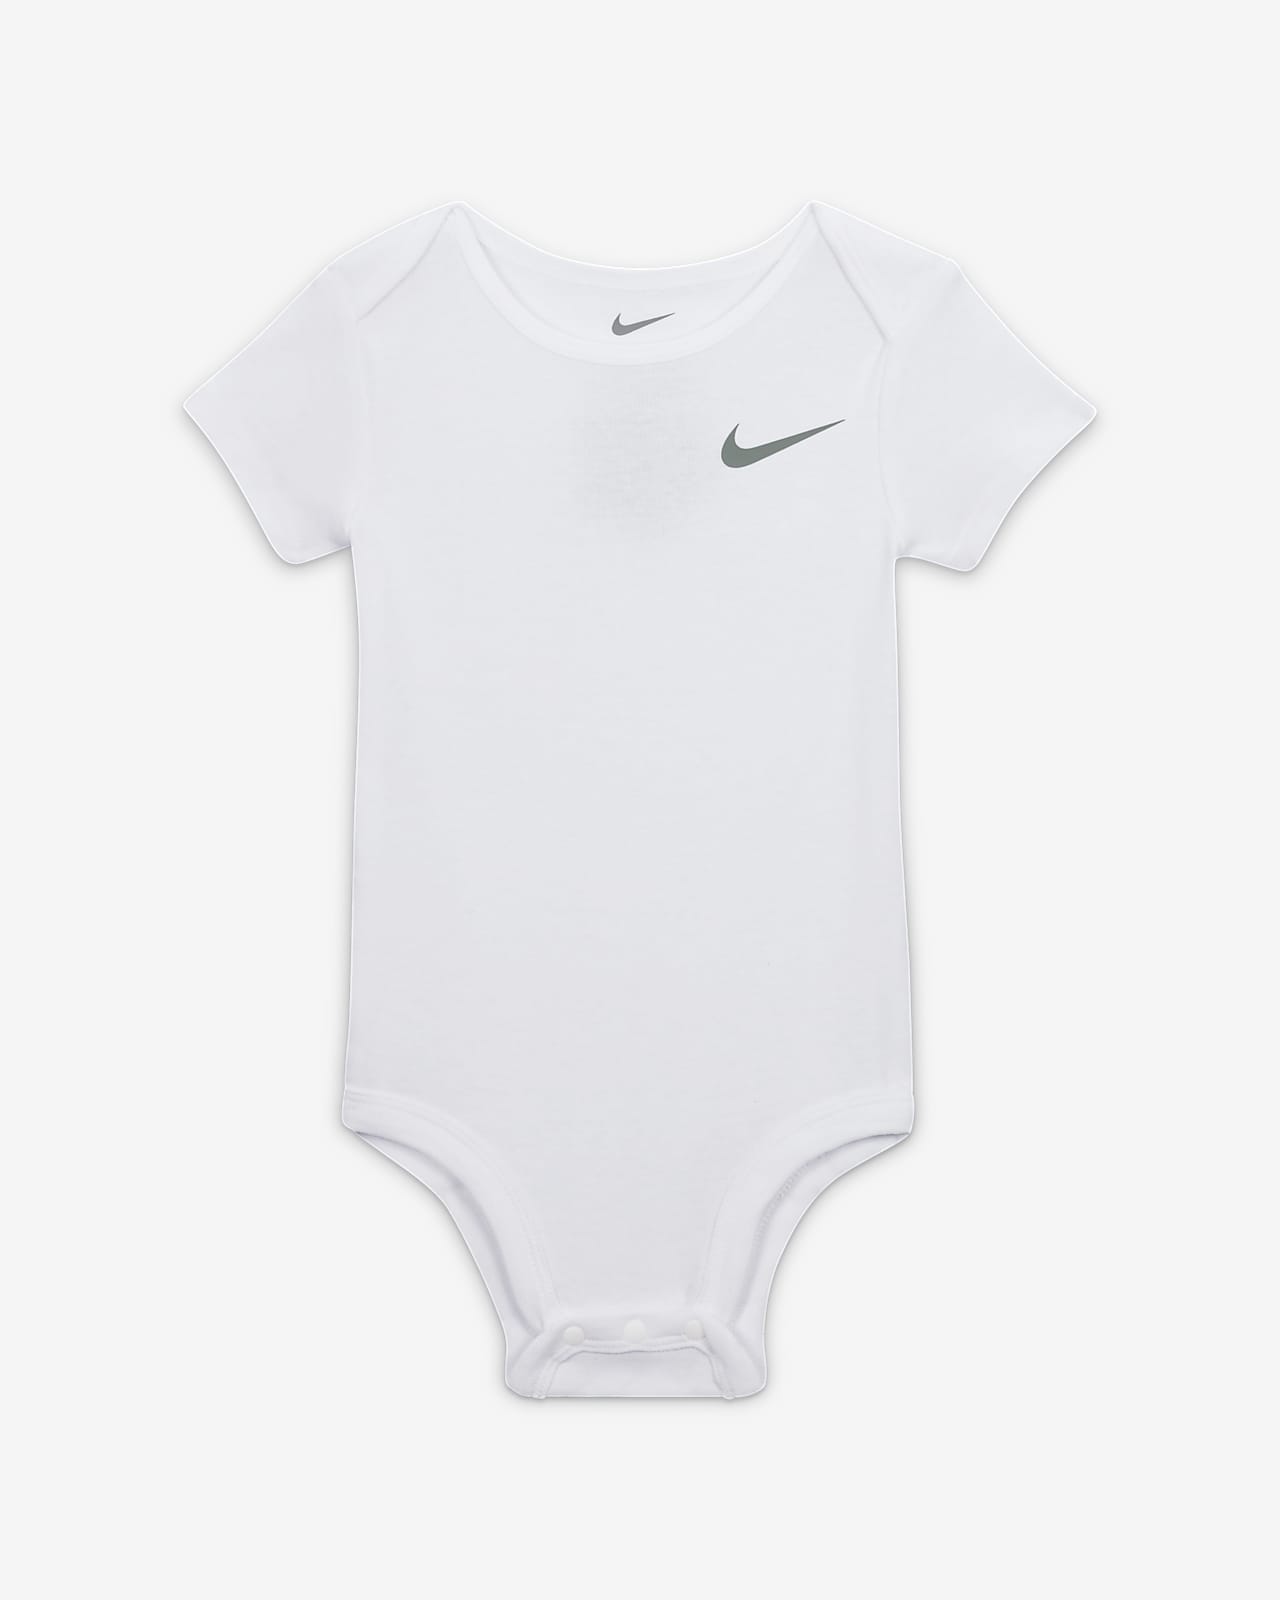 Nike Essentials Baby Set Pants 3-Piece Set. 3-Piece